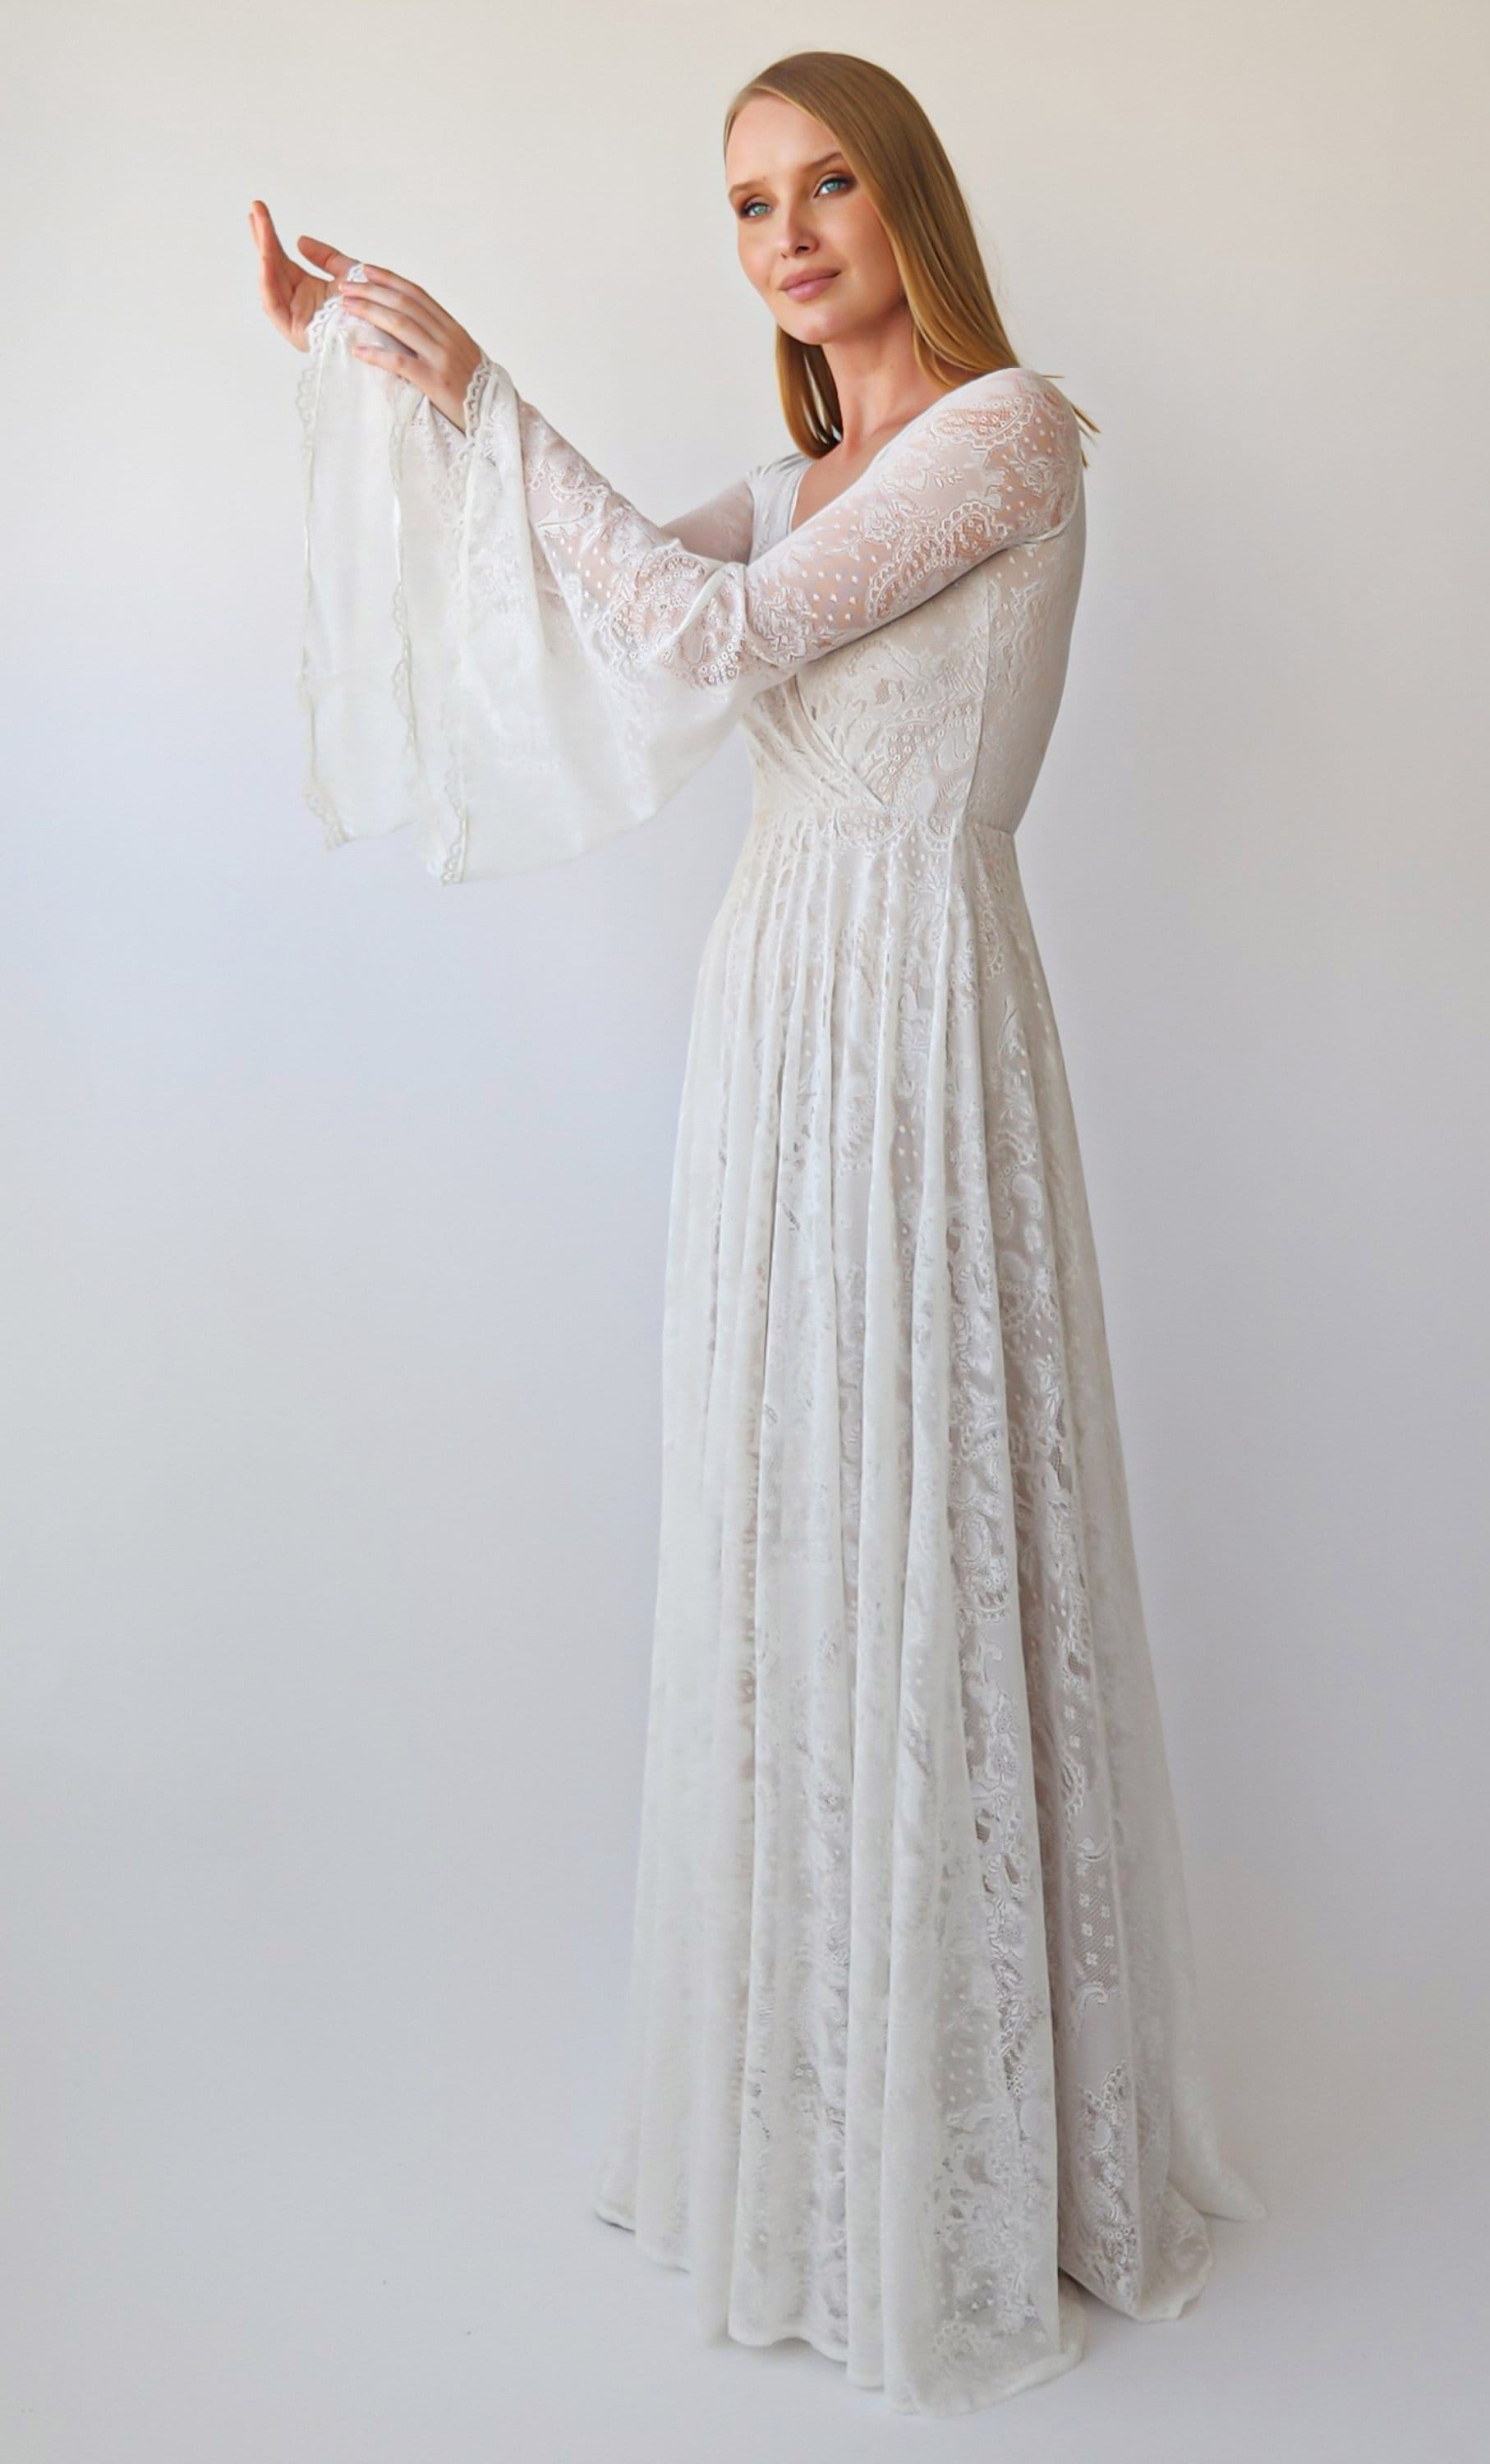 Handmade BELL SLEEVE Crochet Lace Bohemian Wedding Dress / off